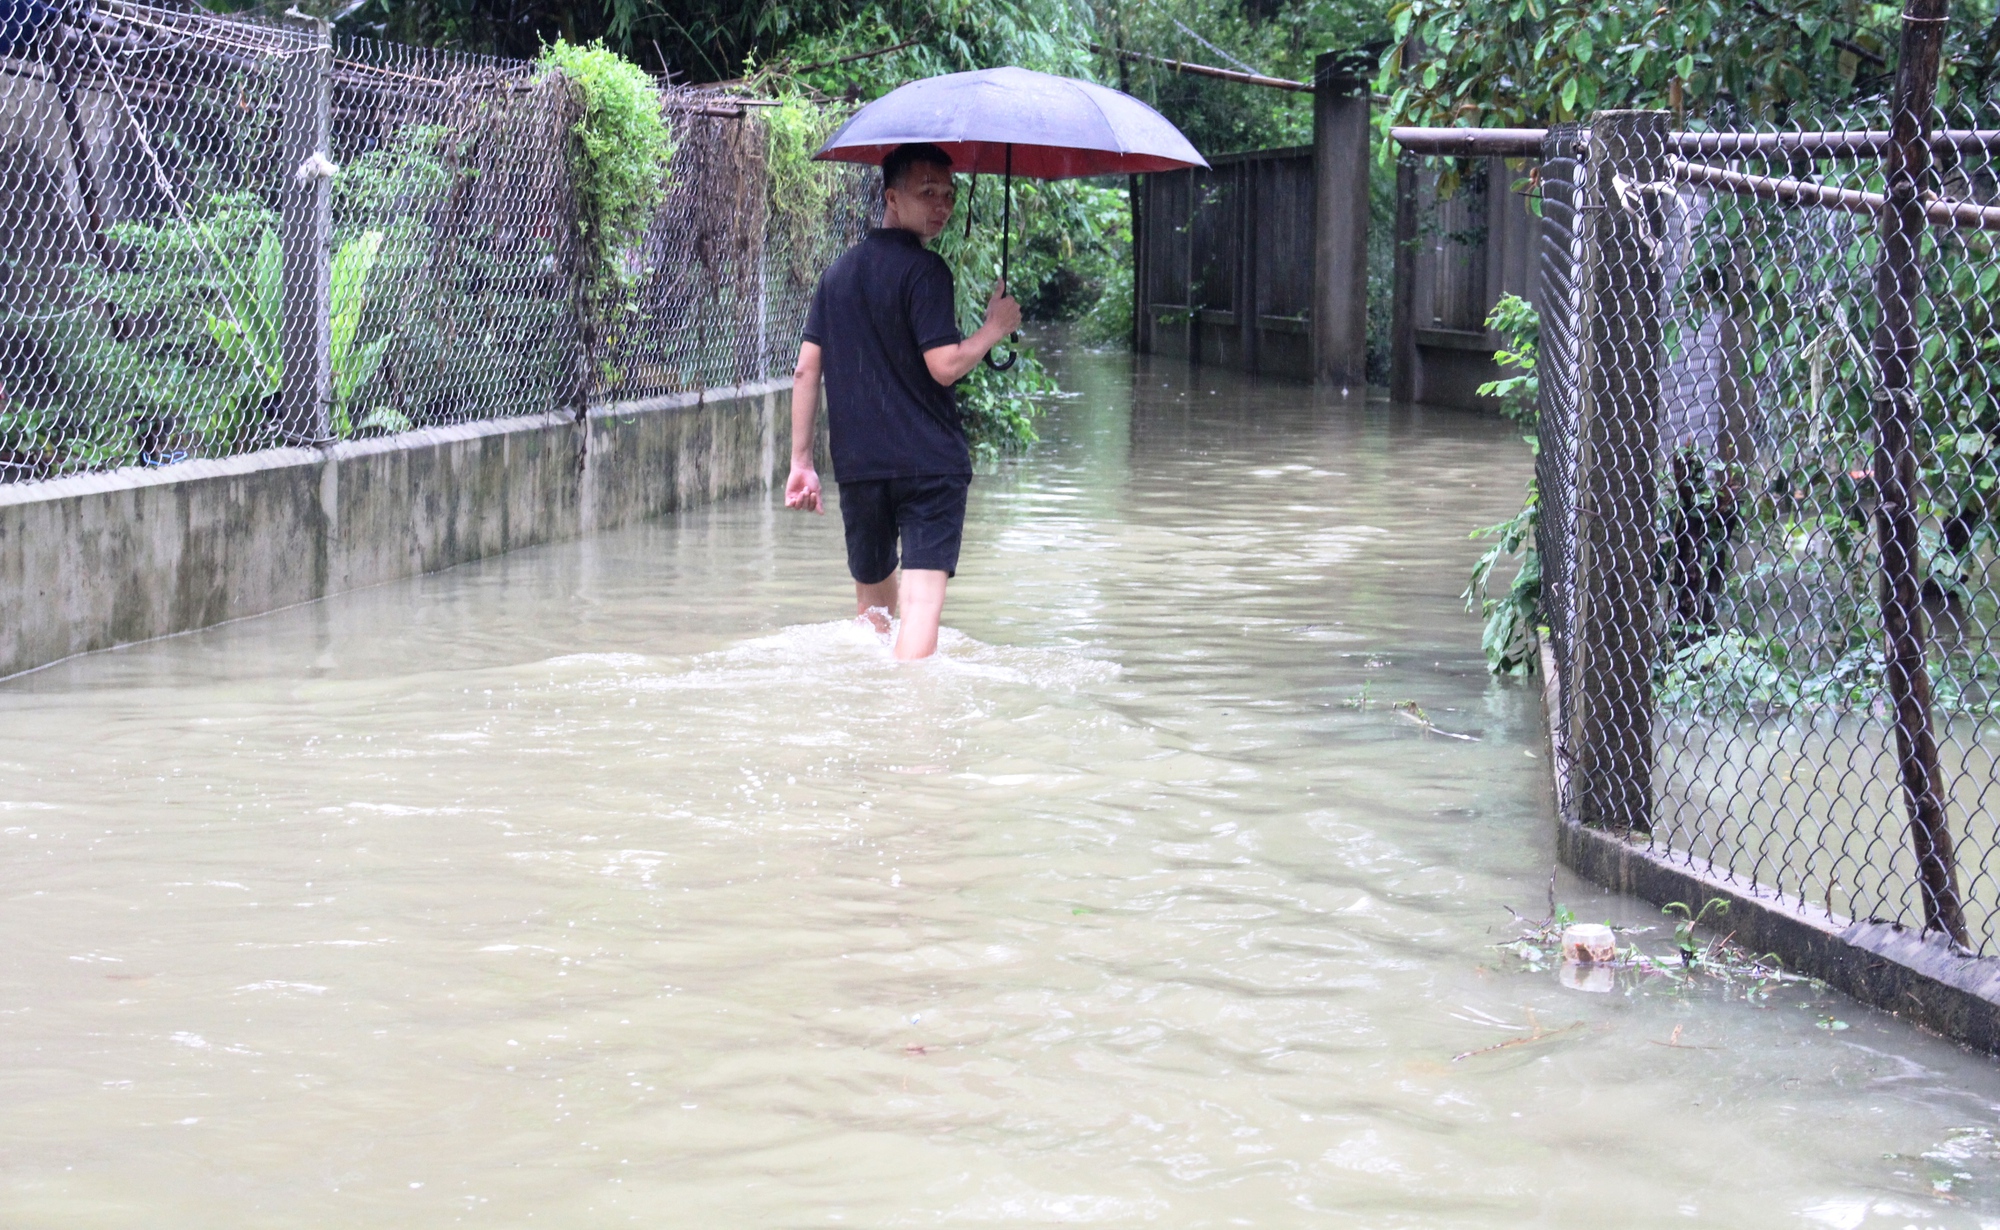 Quảng Nam: Nhiều nơi chìm trong biển nước, dân dùng ghe đi lại - Ảnh 13.